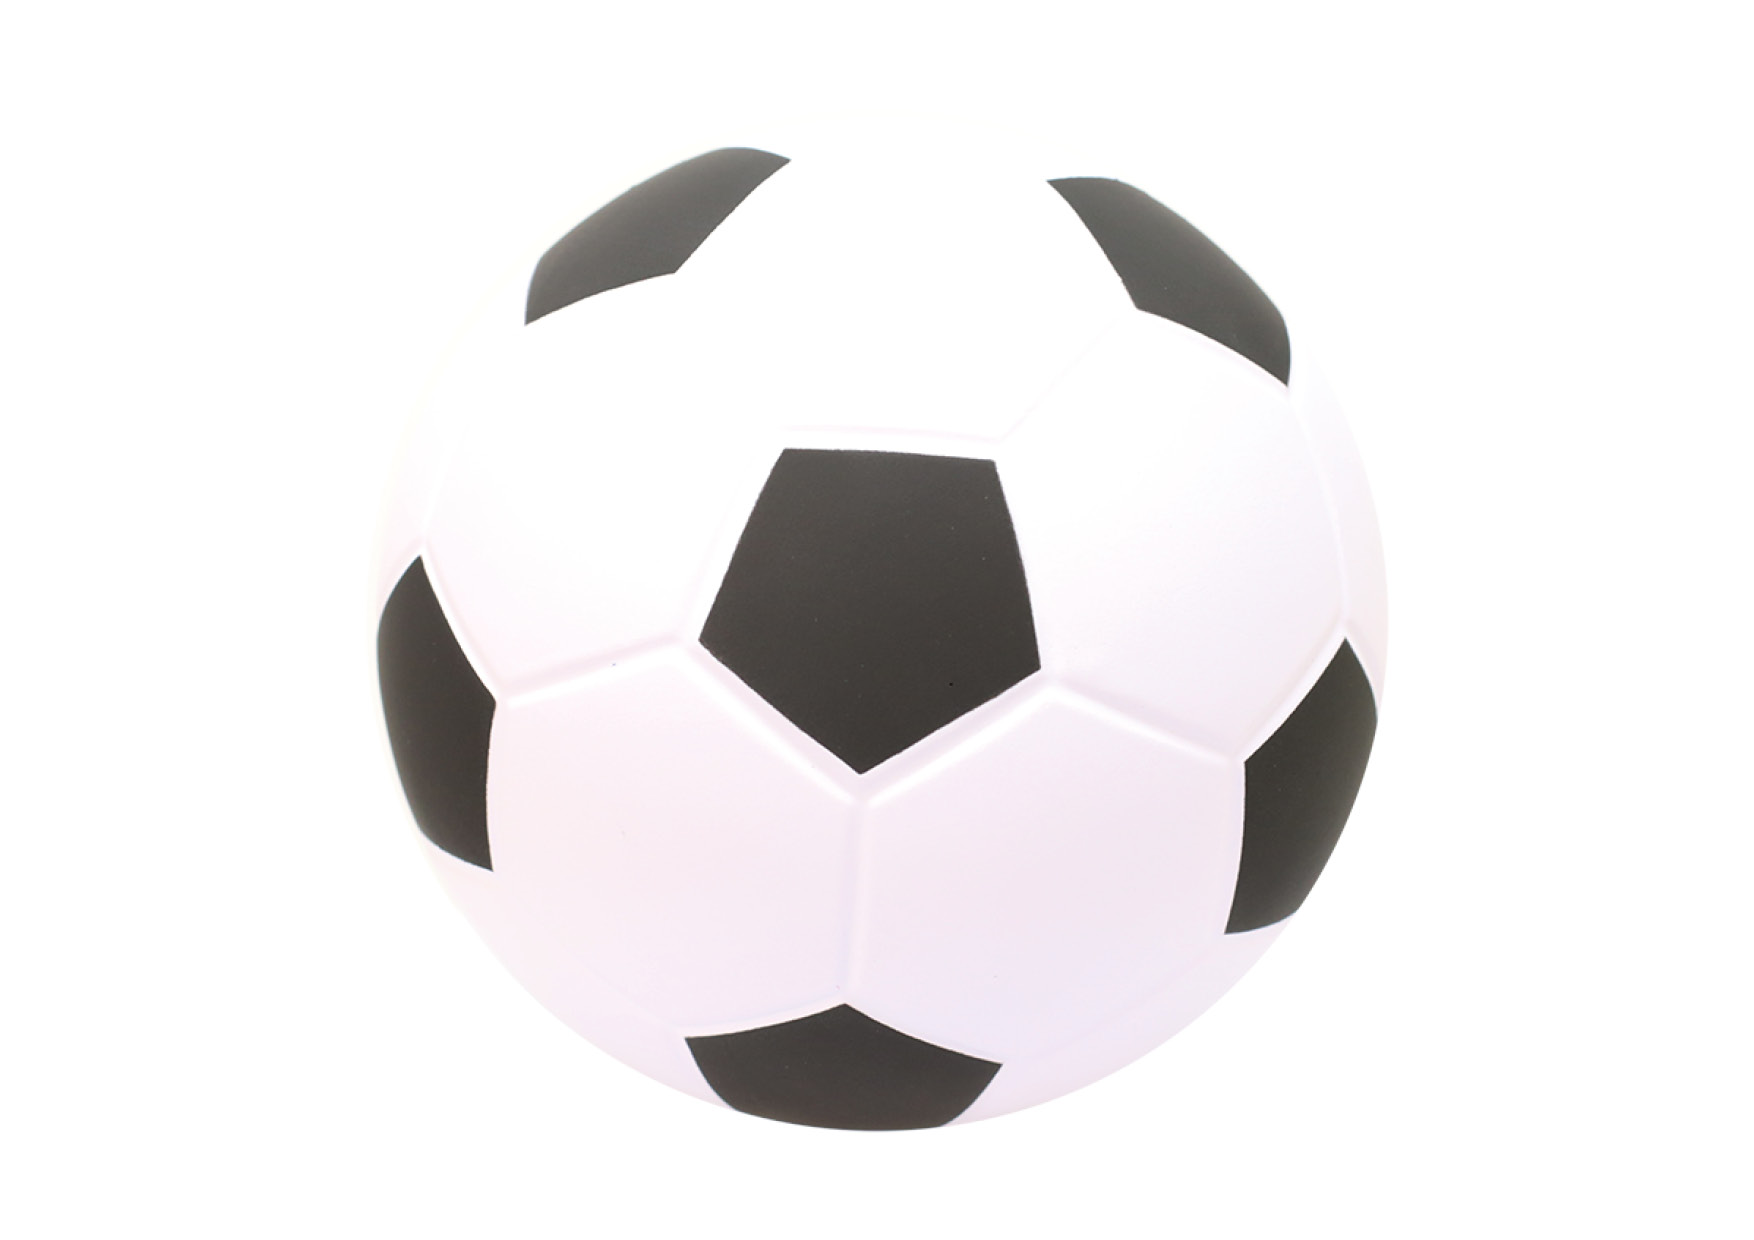 Balón de fútbol en espuma